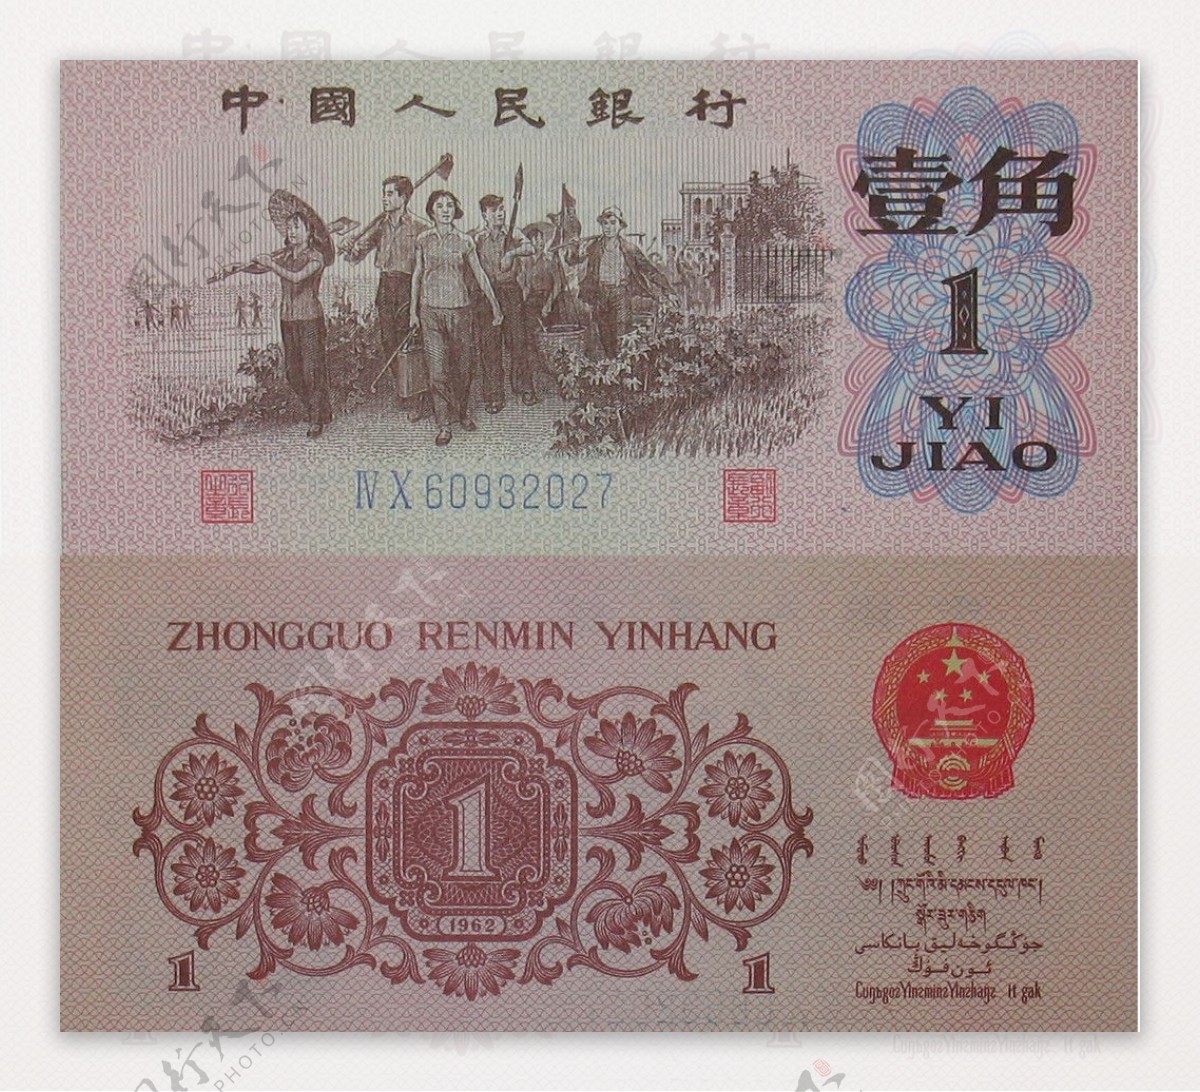 壹角1角中国人民银行钞票